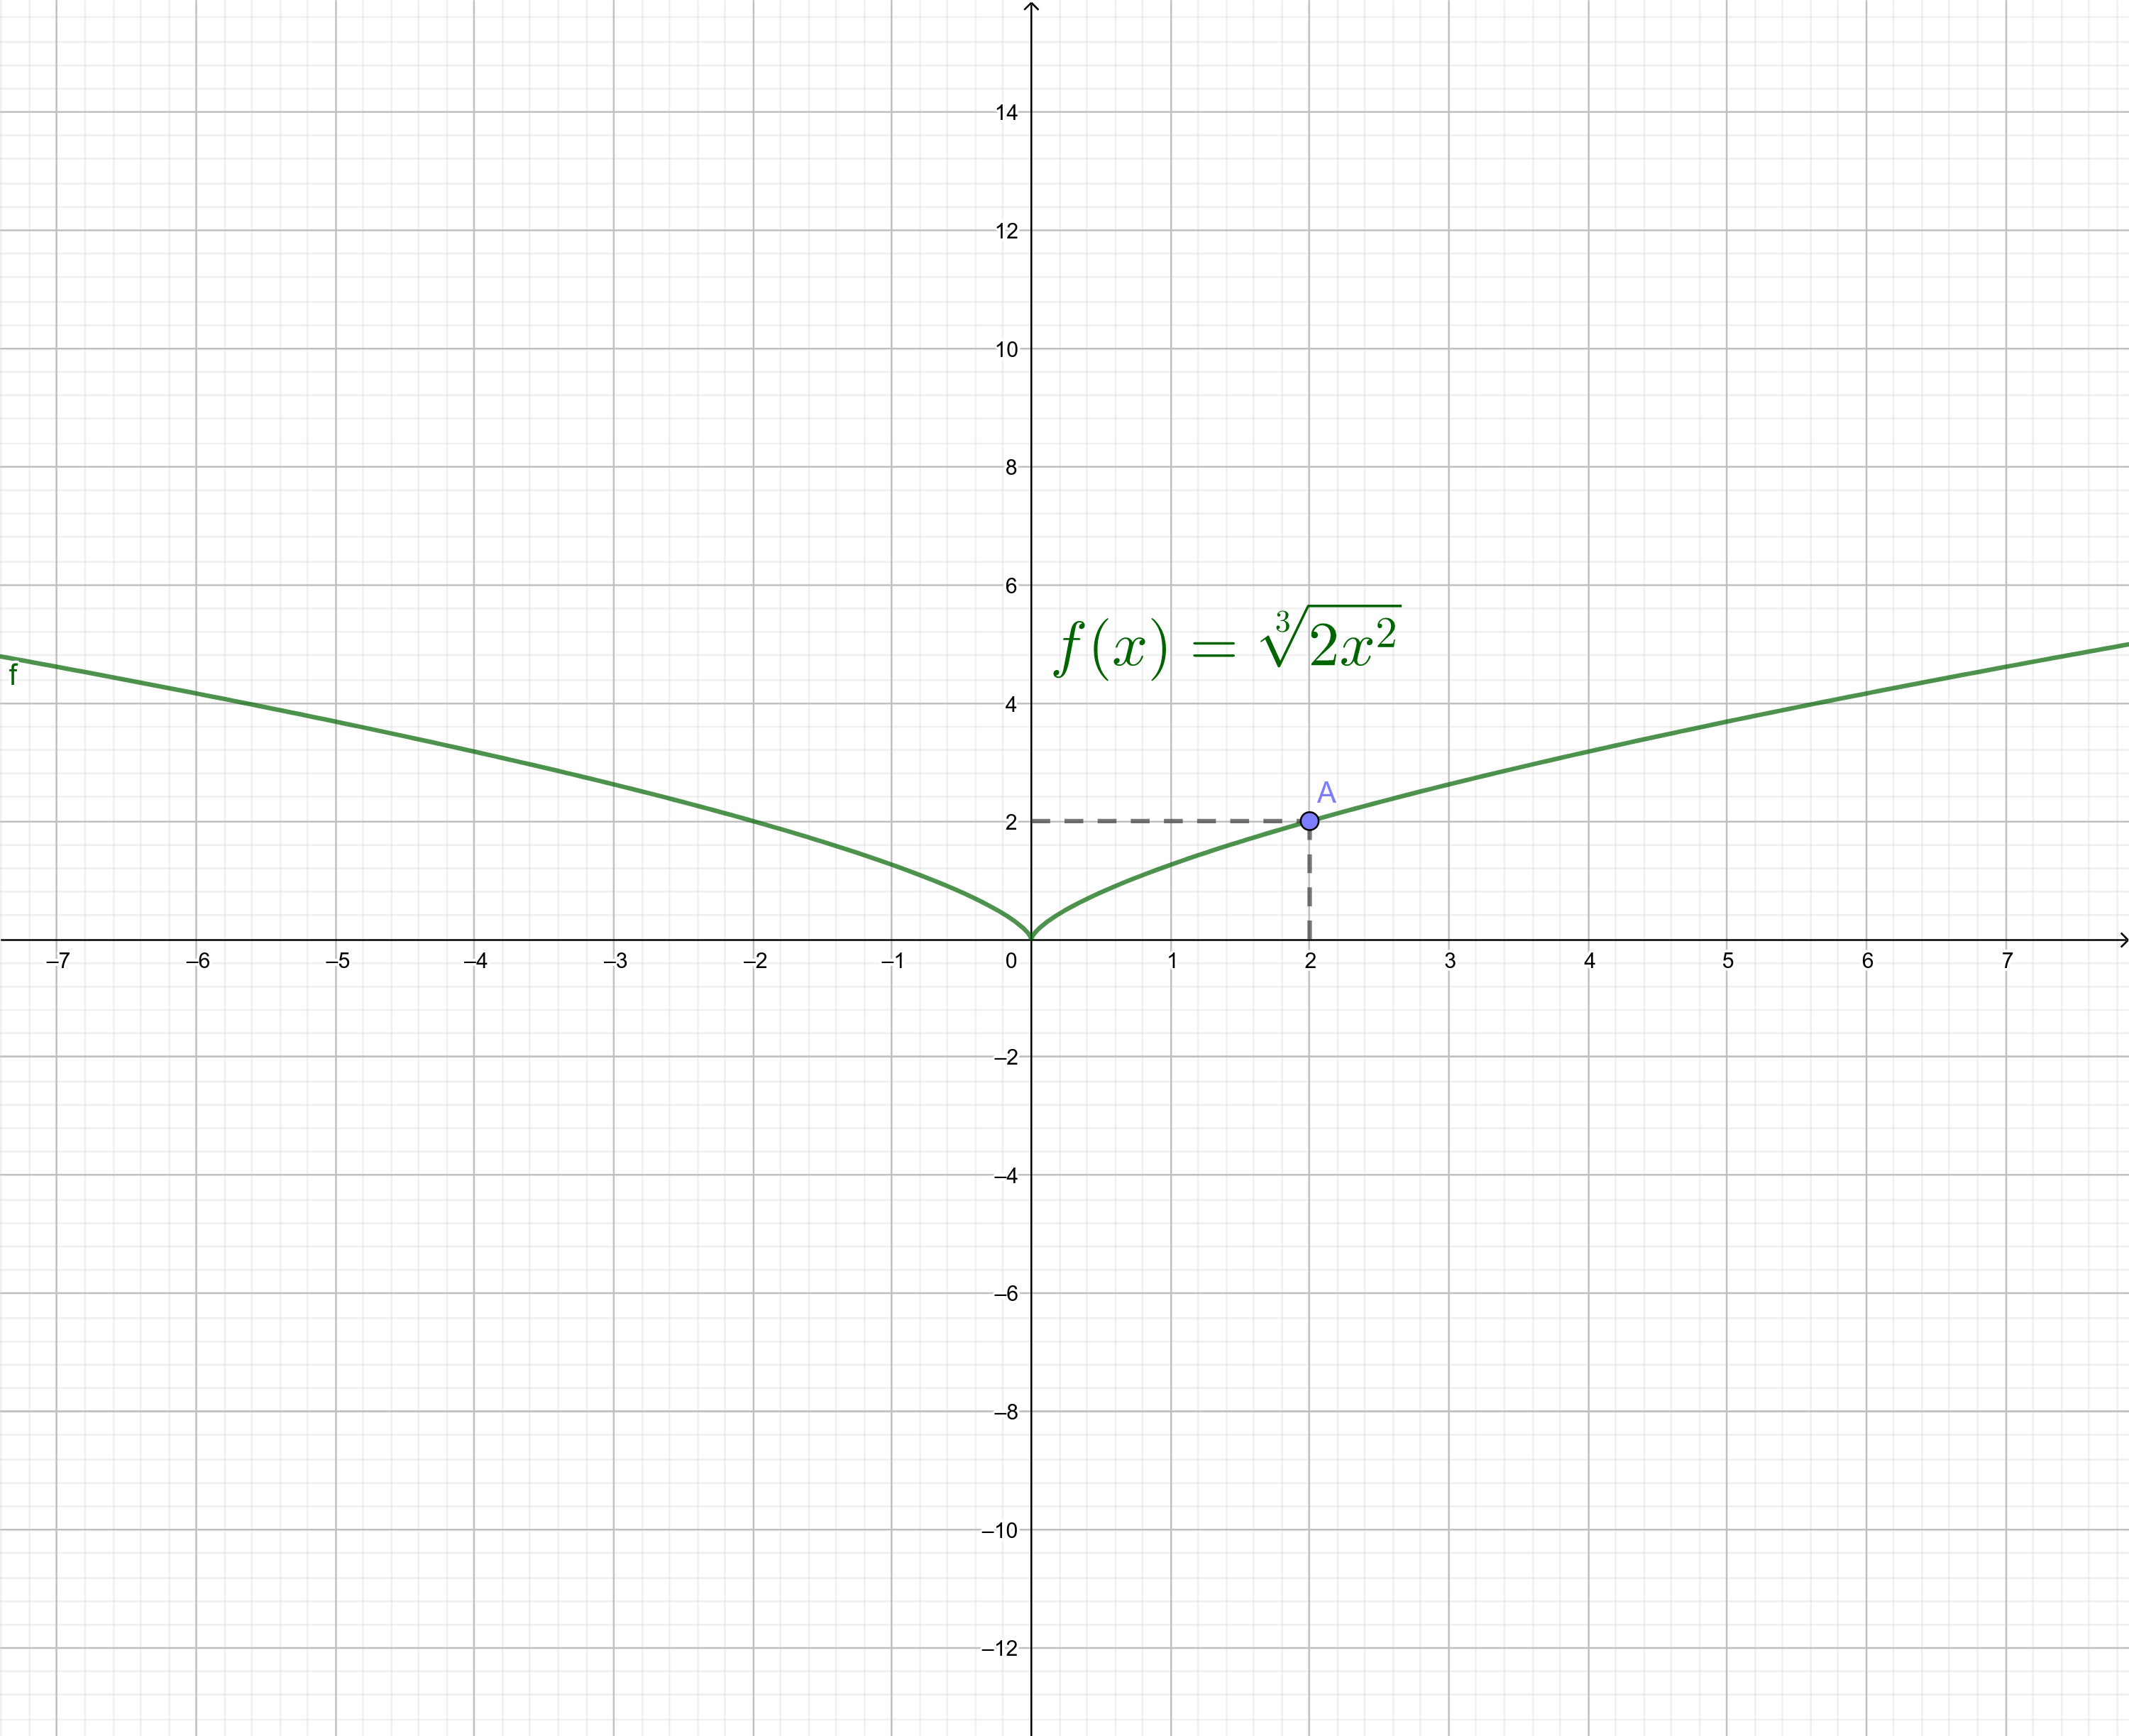 f(2) = ³√(2 · 2²) = ³√(2 · 4) = ³√(8) = ³√(2³) = 2